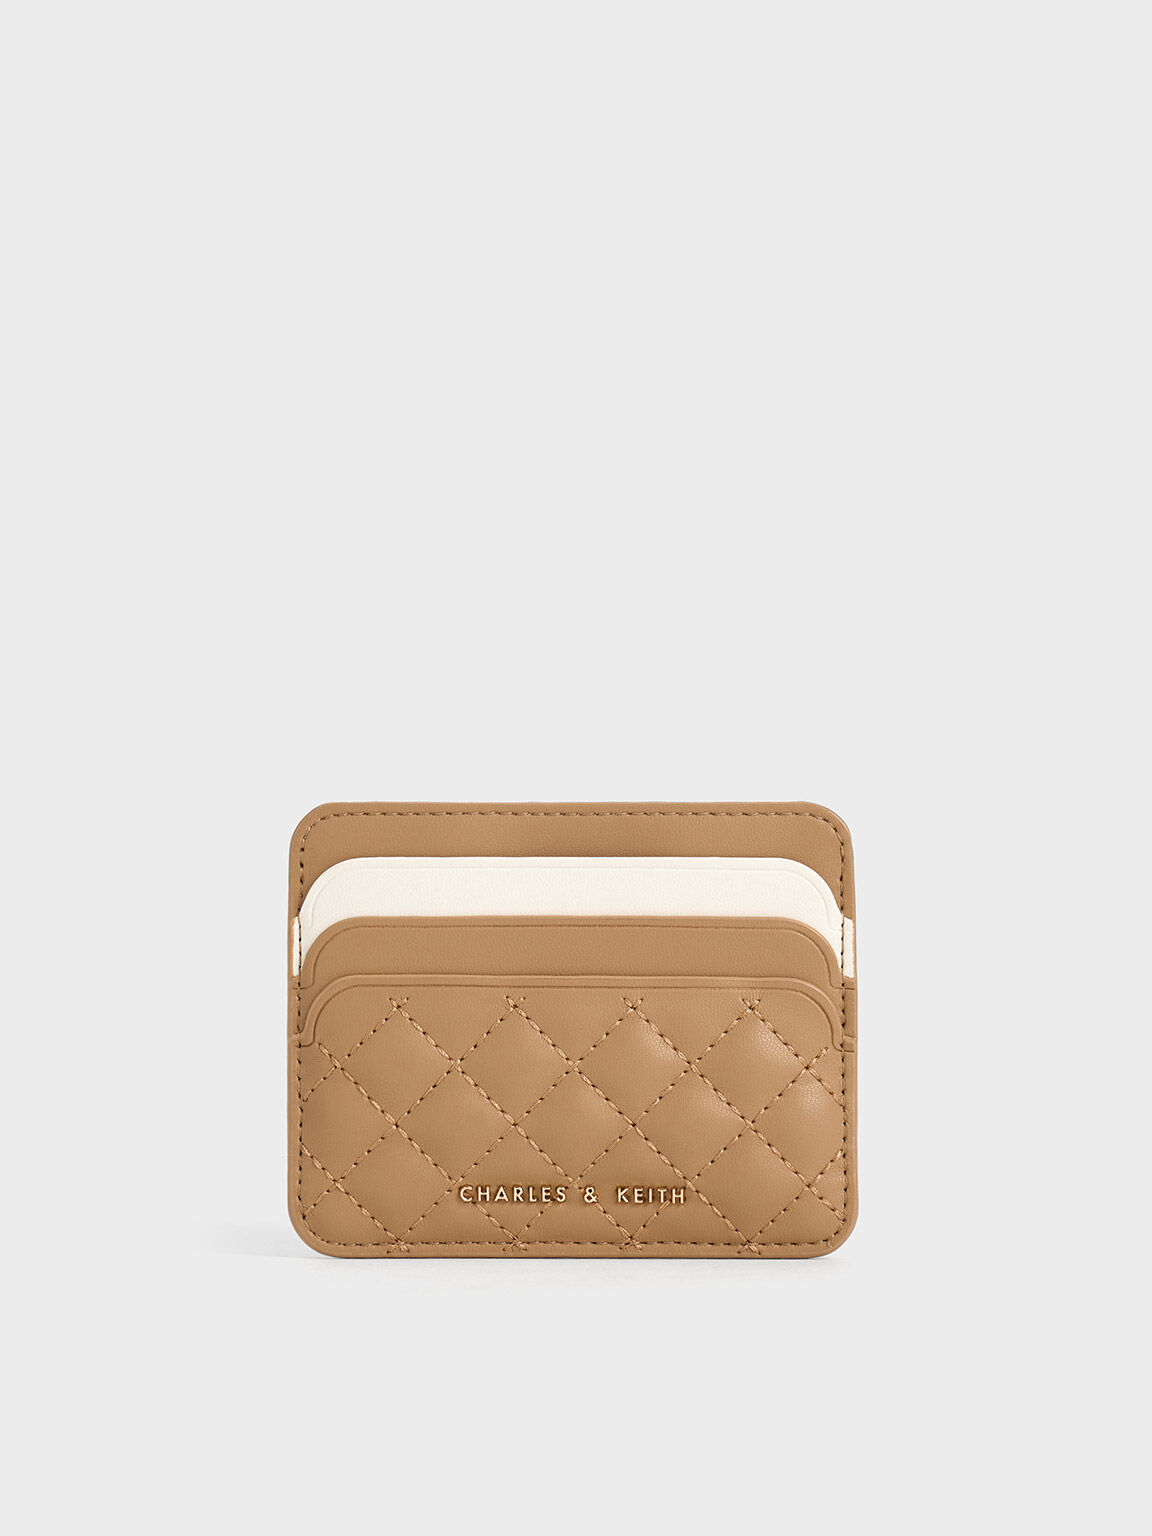 MARNI: credit card holder in saffiano leather - Fuchsia | MARNI wallet  PFMO0025U0LV520 online at GIGLIO.COM